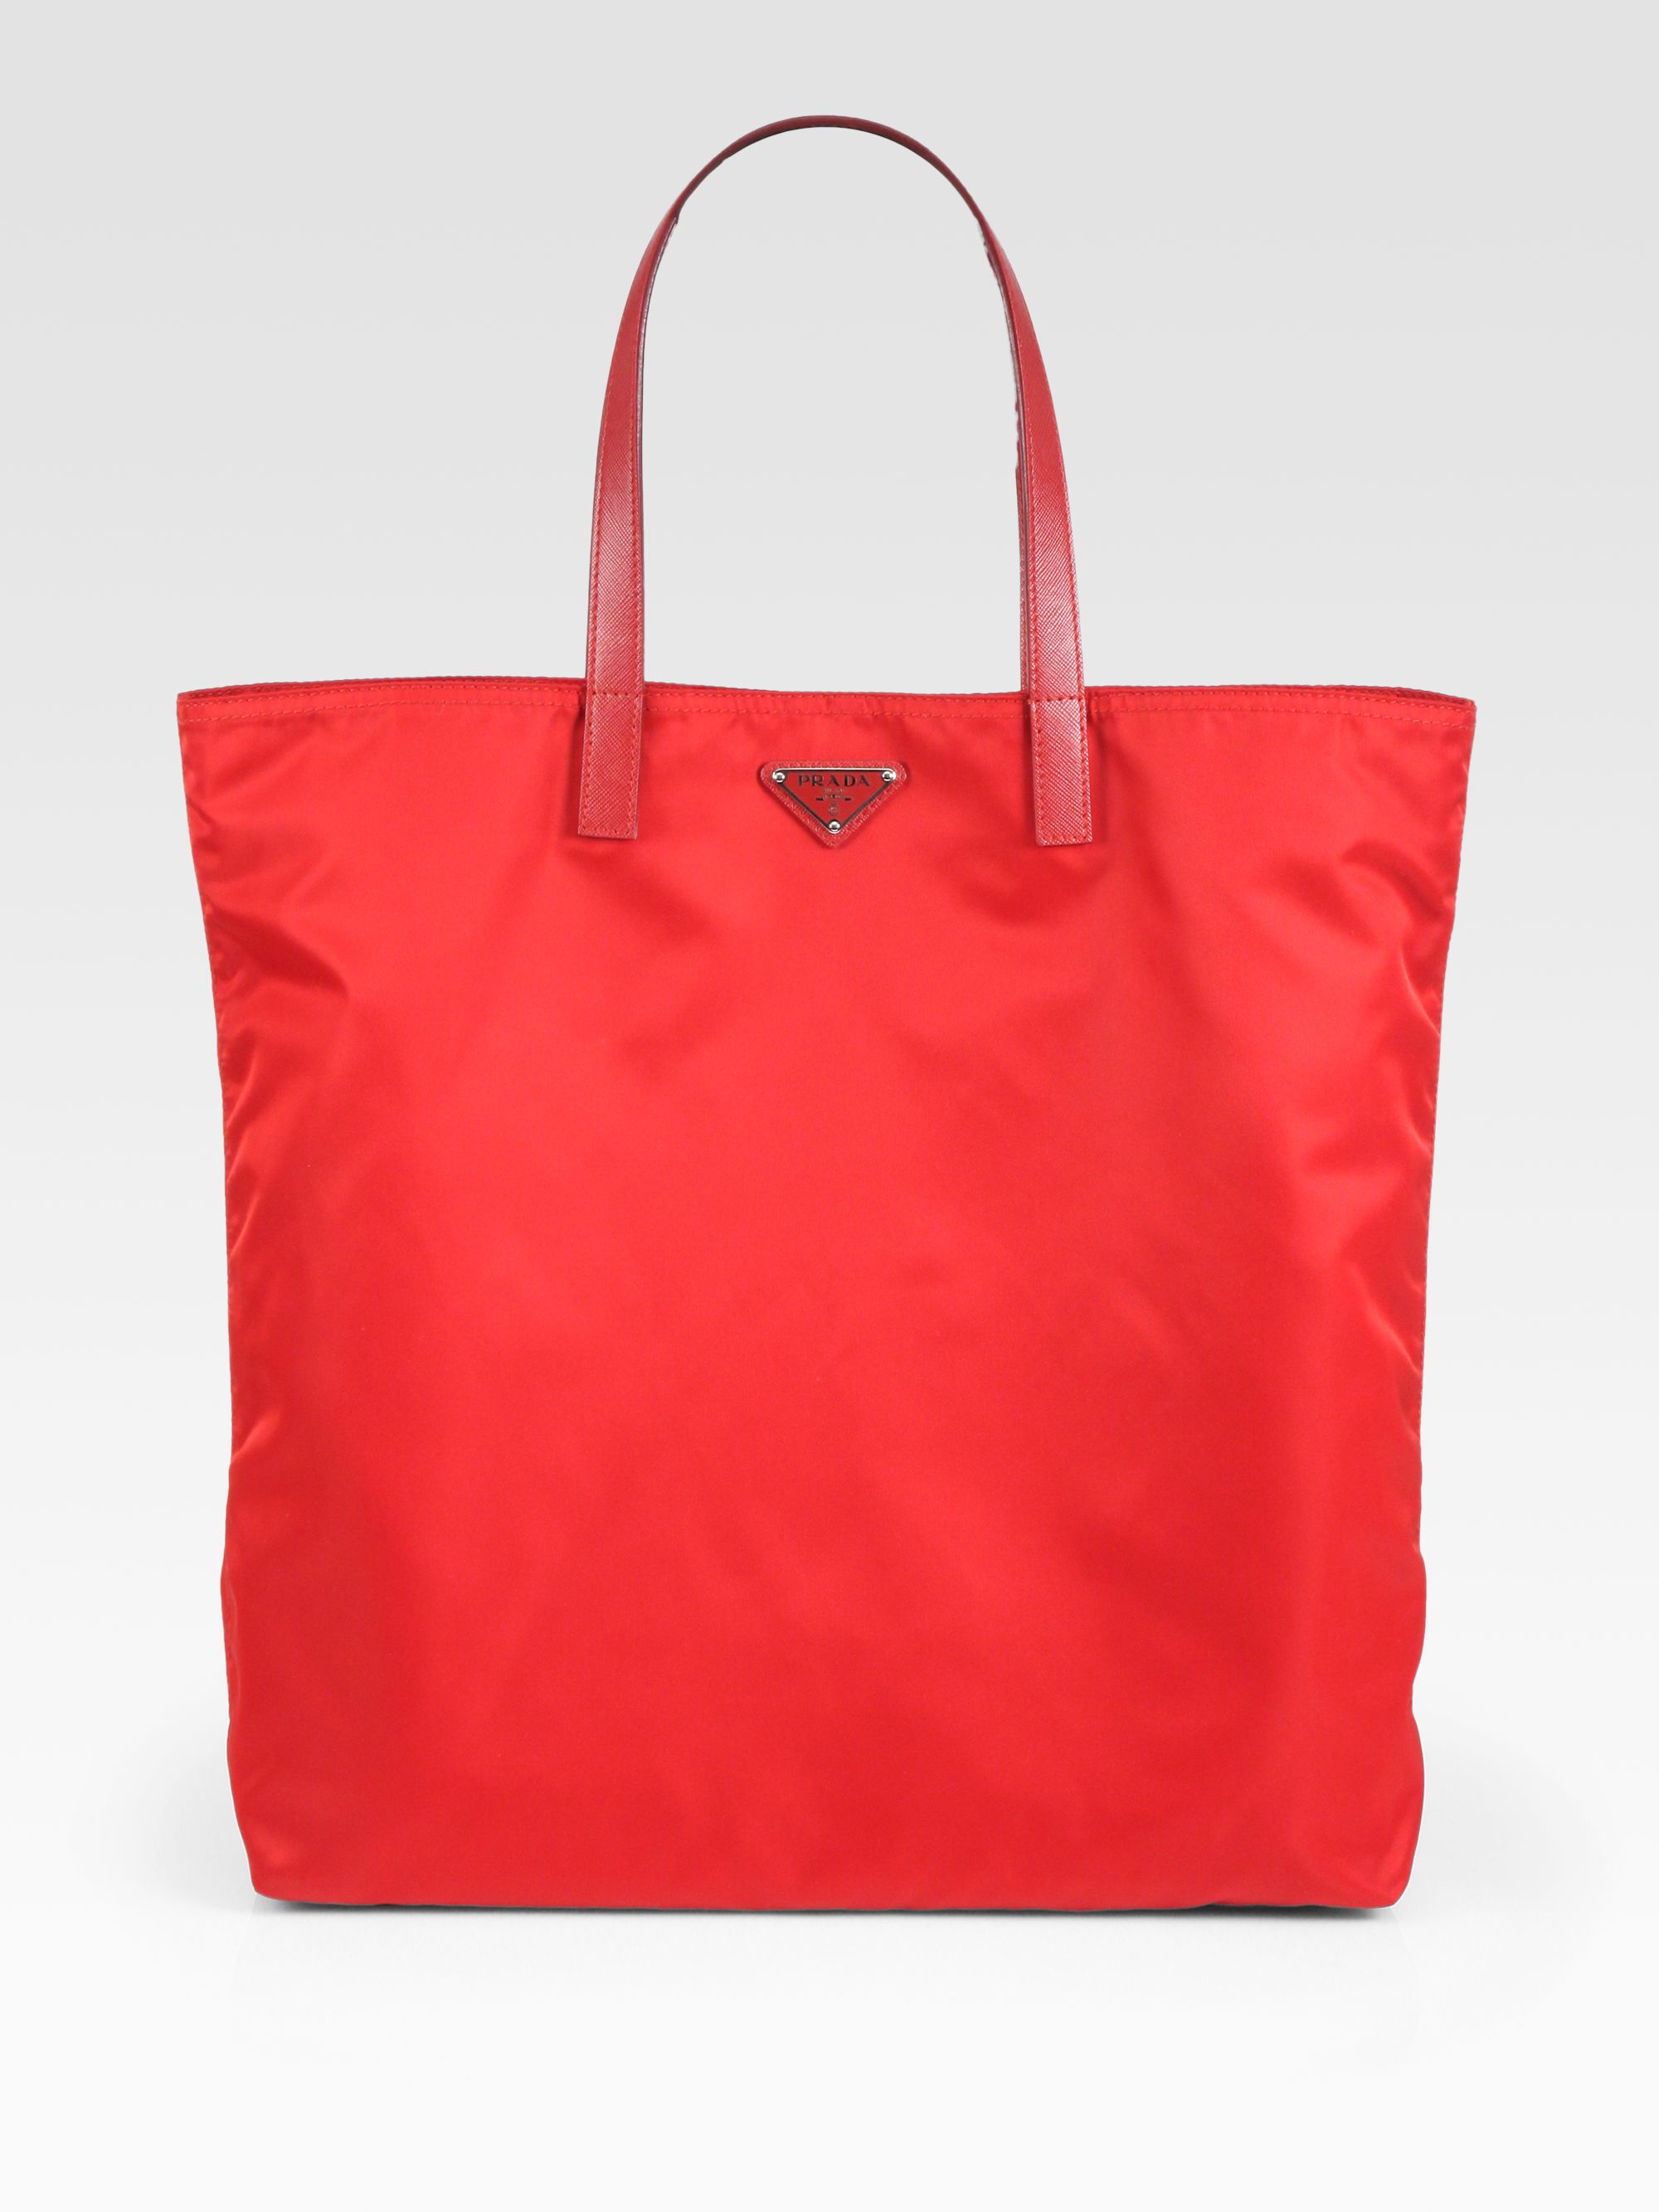 Prada Vela Nylon Tote Bag in Red | Lyst